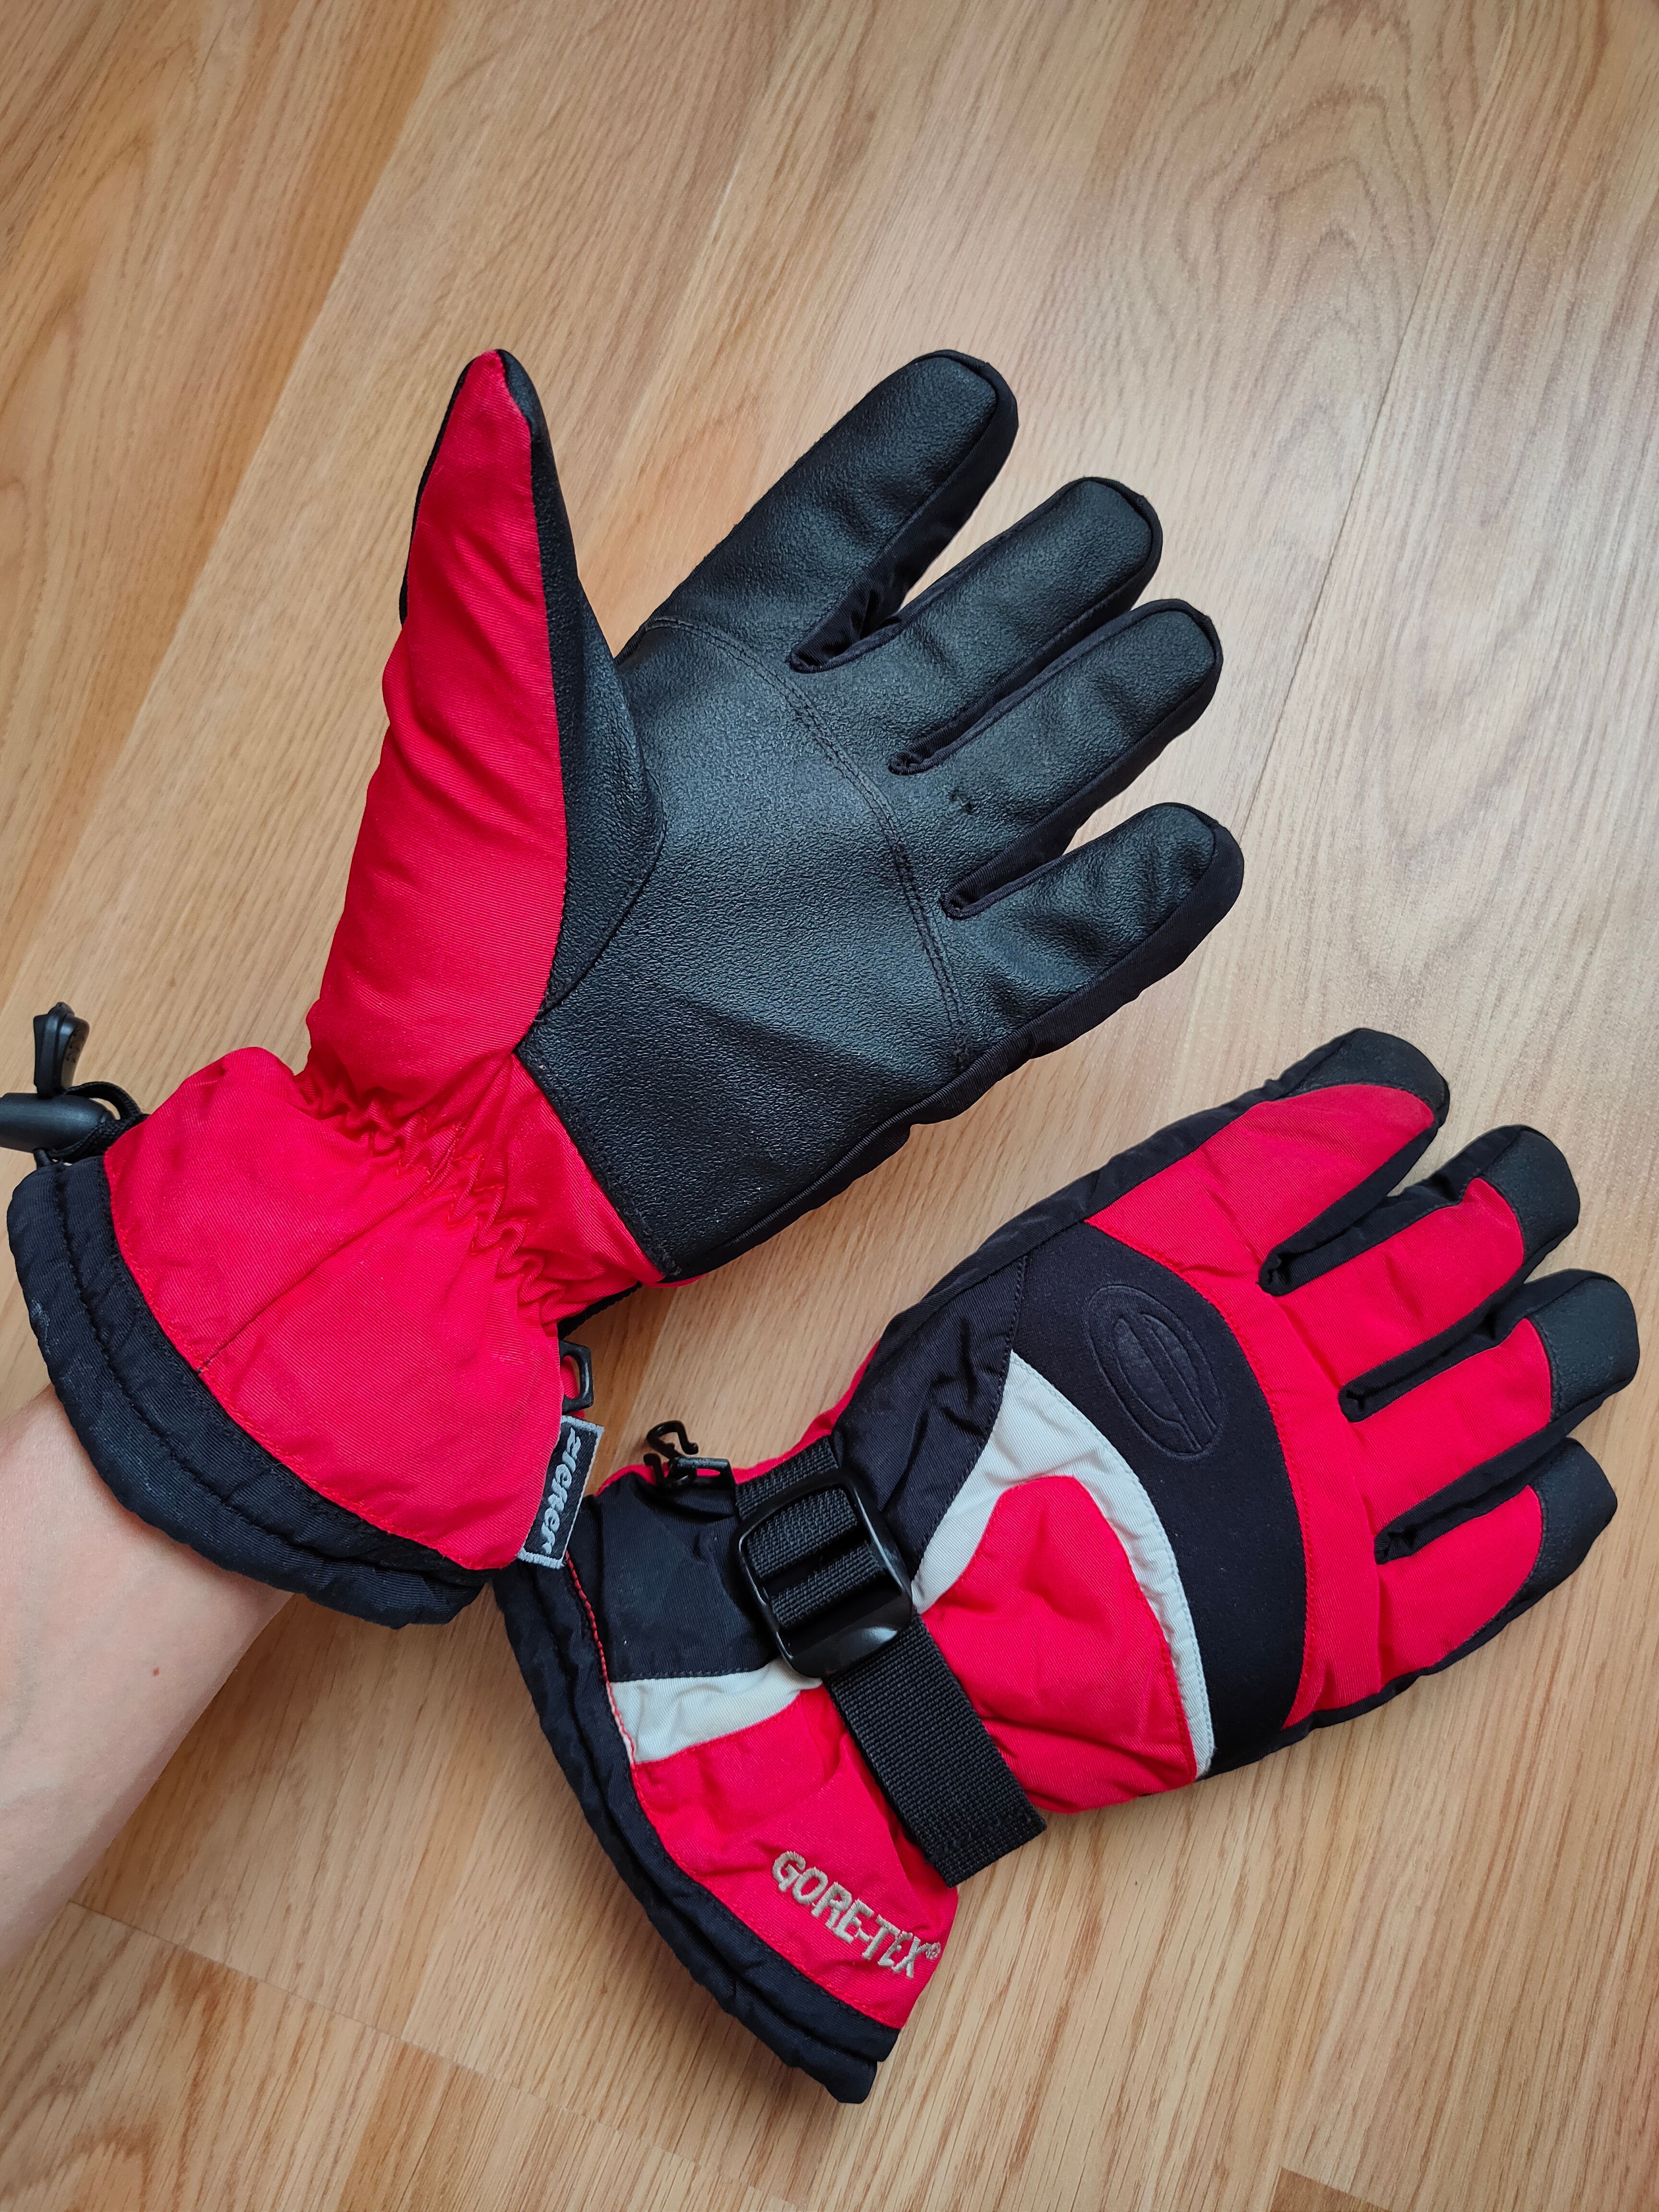 Ski Vintage Ziener Goretex Gloves Gorpcore Outdoor Ski Gloves Size ONE SIZE - 9 Thumbnail